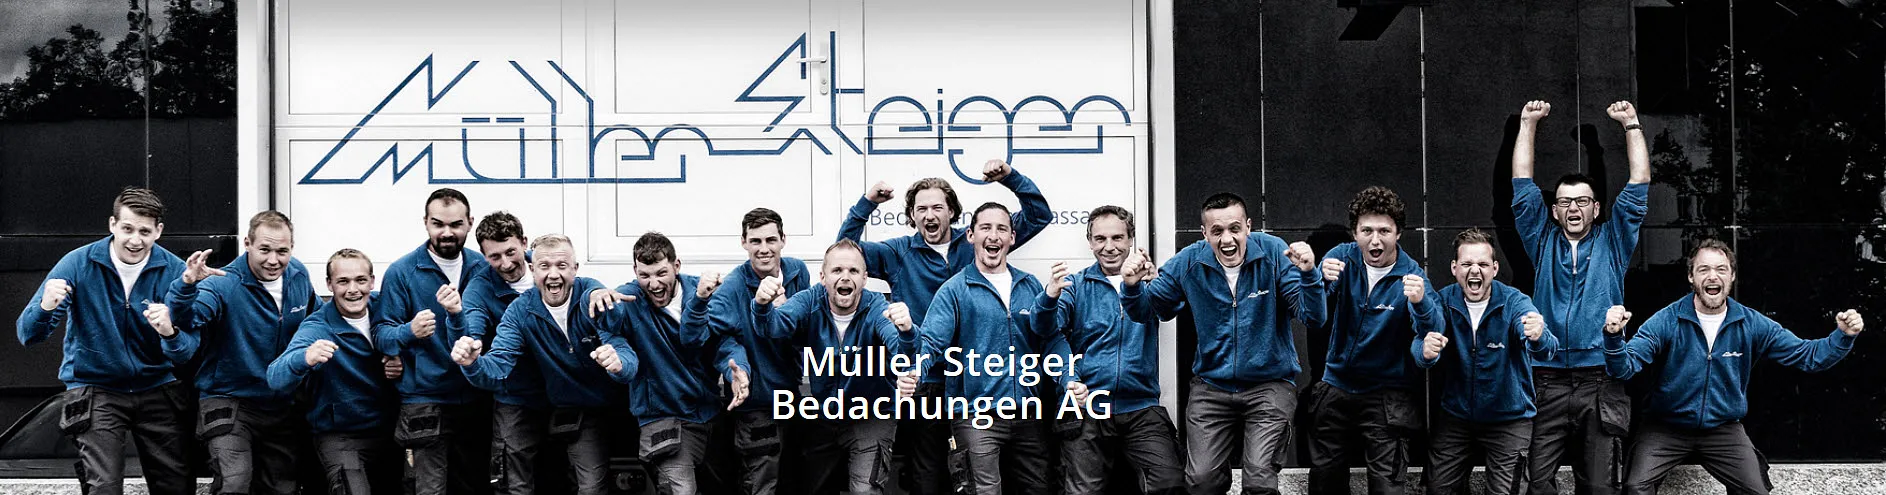 Müller Steiger Bedachungen AG